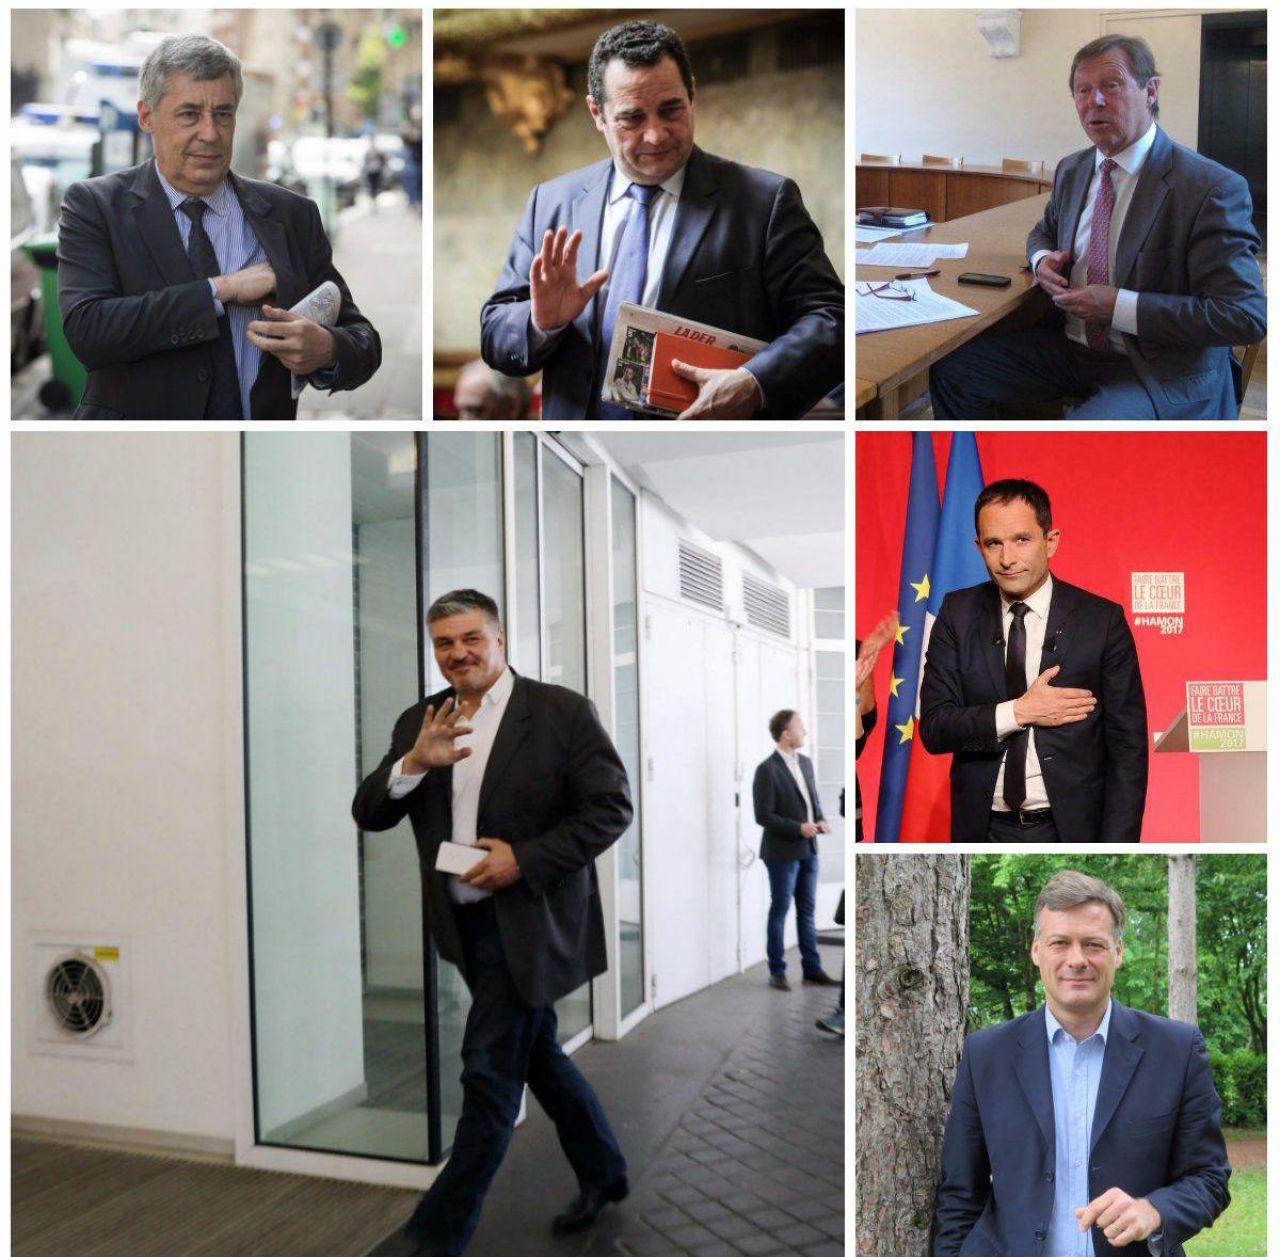 <b></b> Henri Guaino, Jean-Frédéric Poisson, Jean-Marie-Tétart, David Douillet, Benoit Hamon et Arnaud Richard (de gauche à droite et de haut en bas), députés sortants, ont tous été battus aux législatives de juin 2017. 